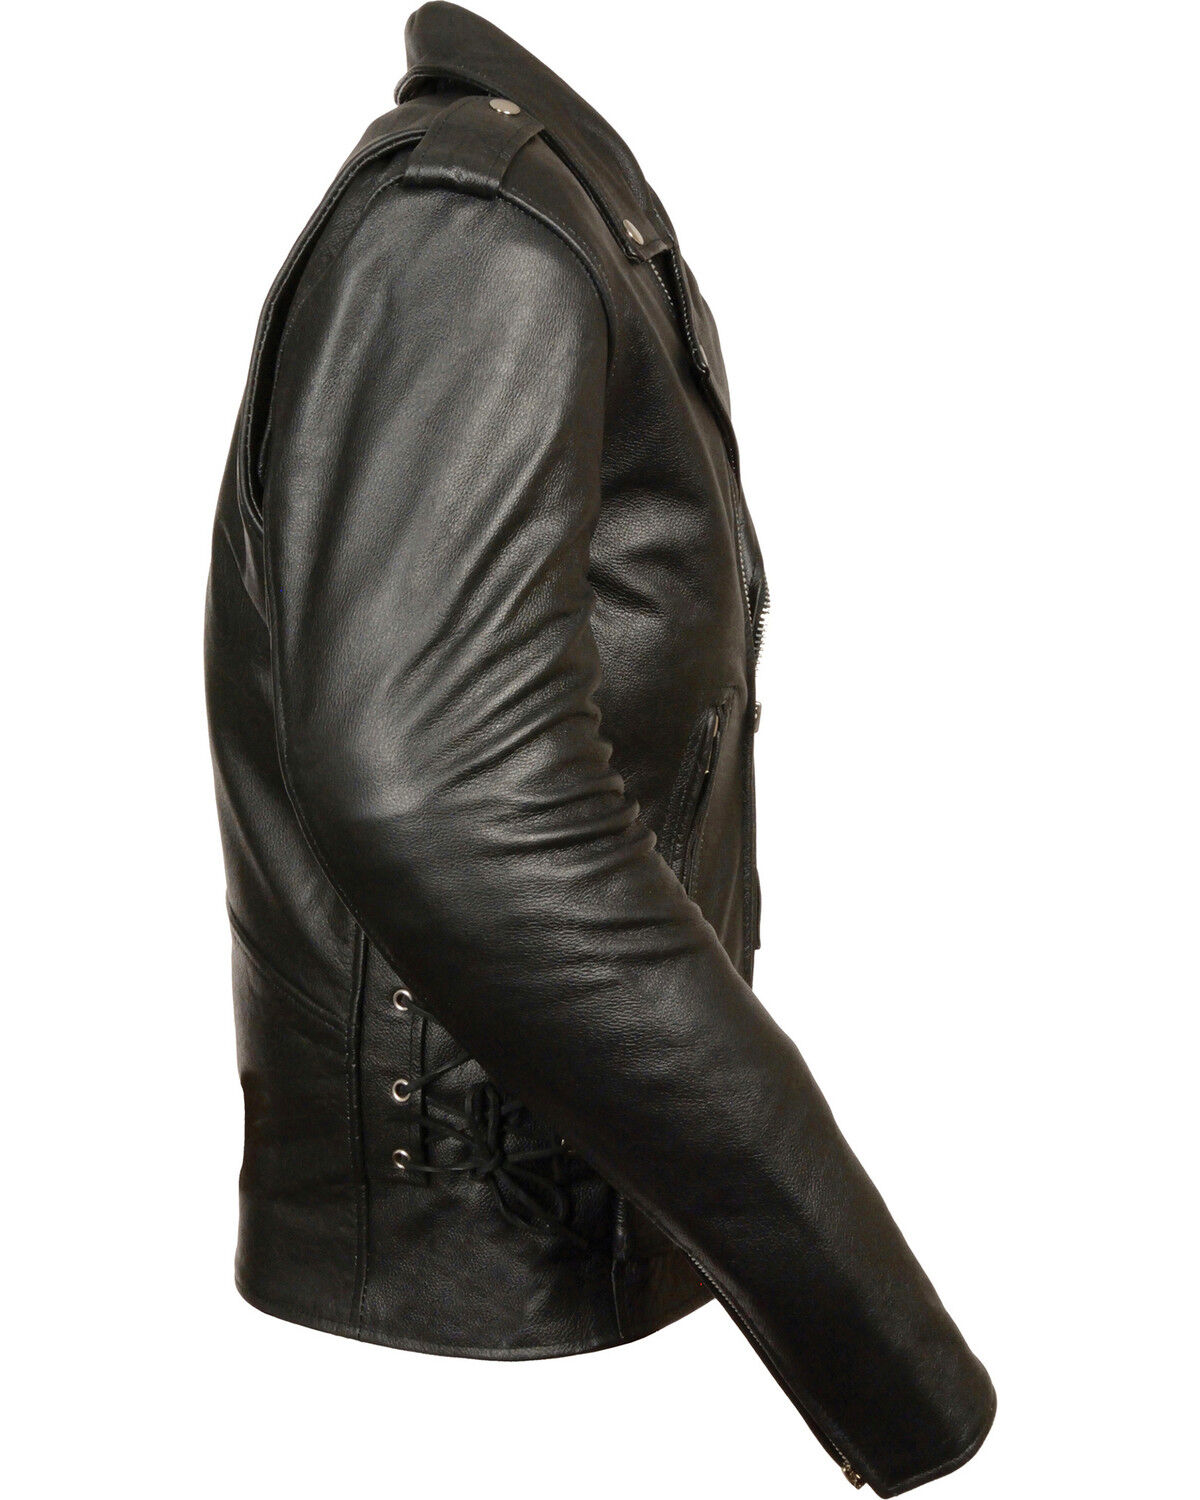 Milwaukee Leather Jacket Size Chart